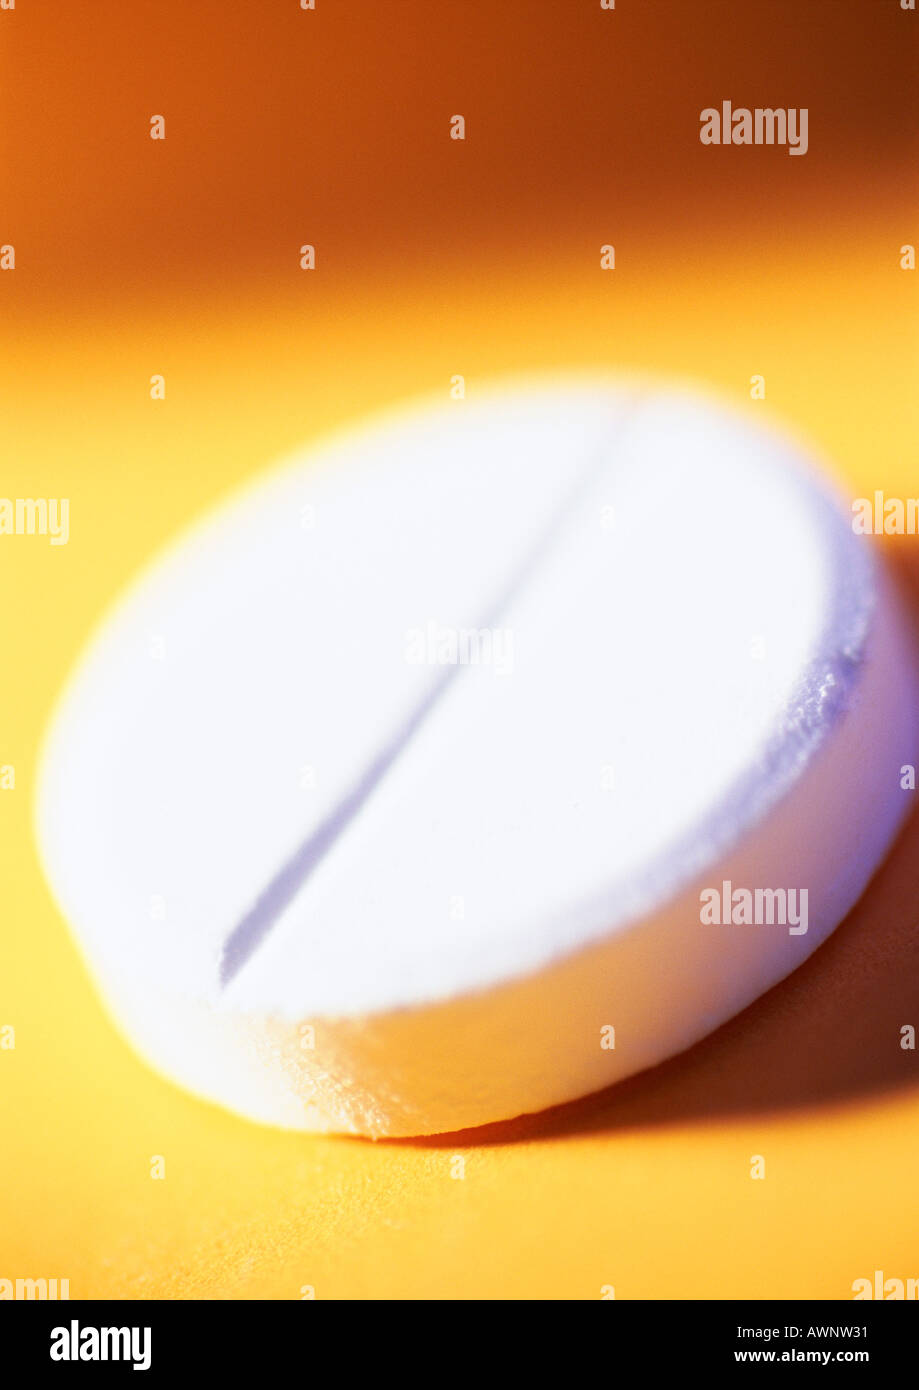 Medizin-Tablette, close-up Stockfoto